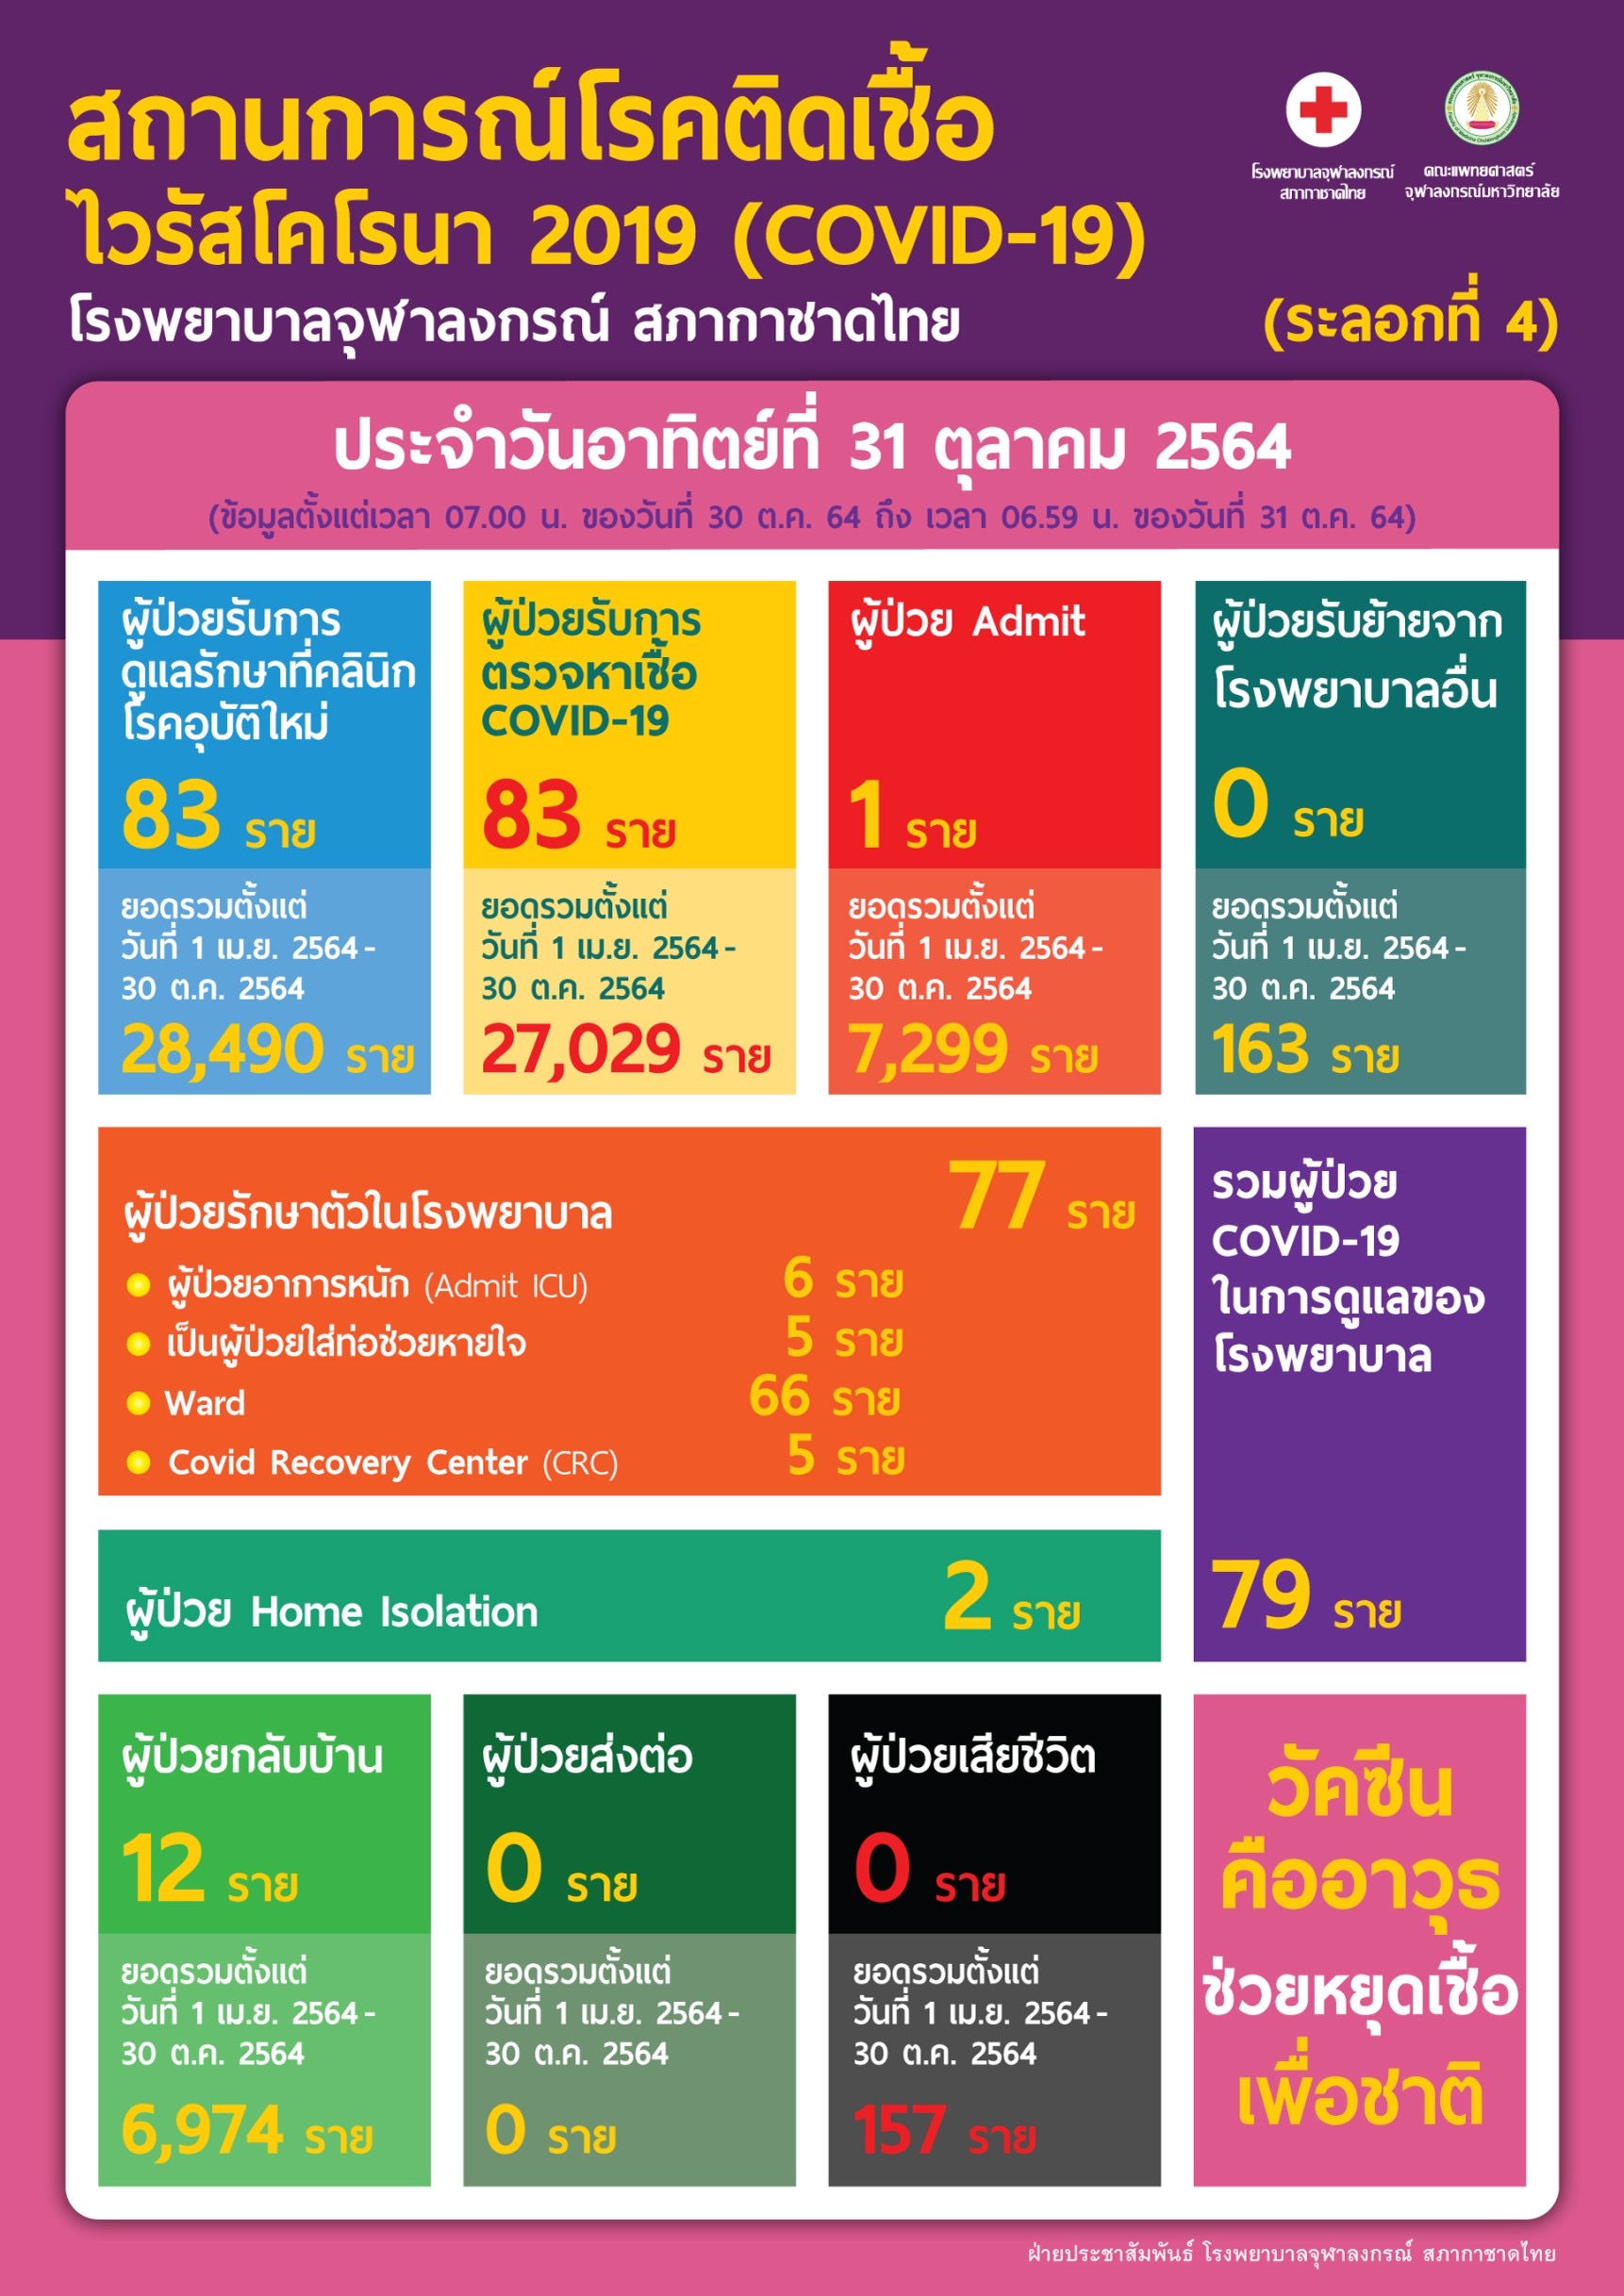 สถานการณ์โรคติดเชื้อไวรัสโคโรนา 2019 (COVID-19) (ระลอกที่ 4) โรงพยาบาลจุฬาลงกรณ์ สภากาชาดไทย ประจำวันอาทิตย์ที่ 31 ตุลาคม 2564